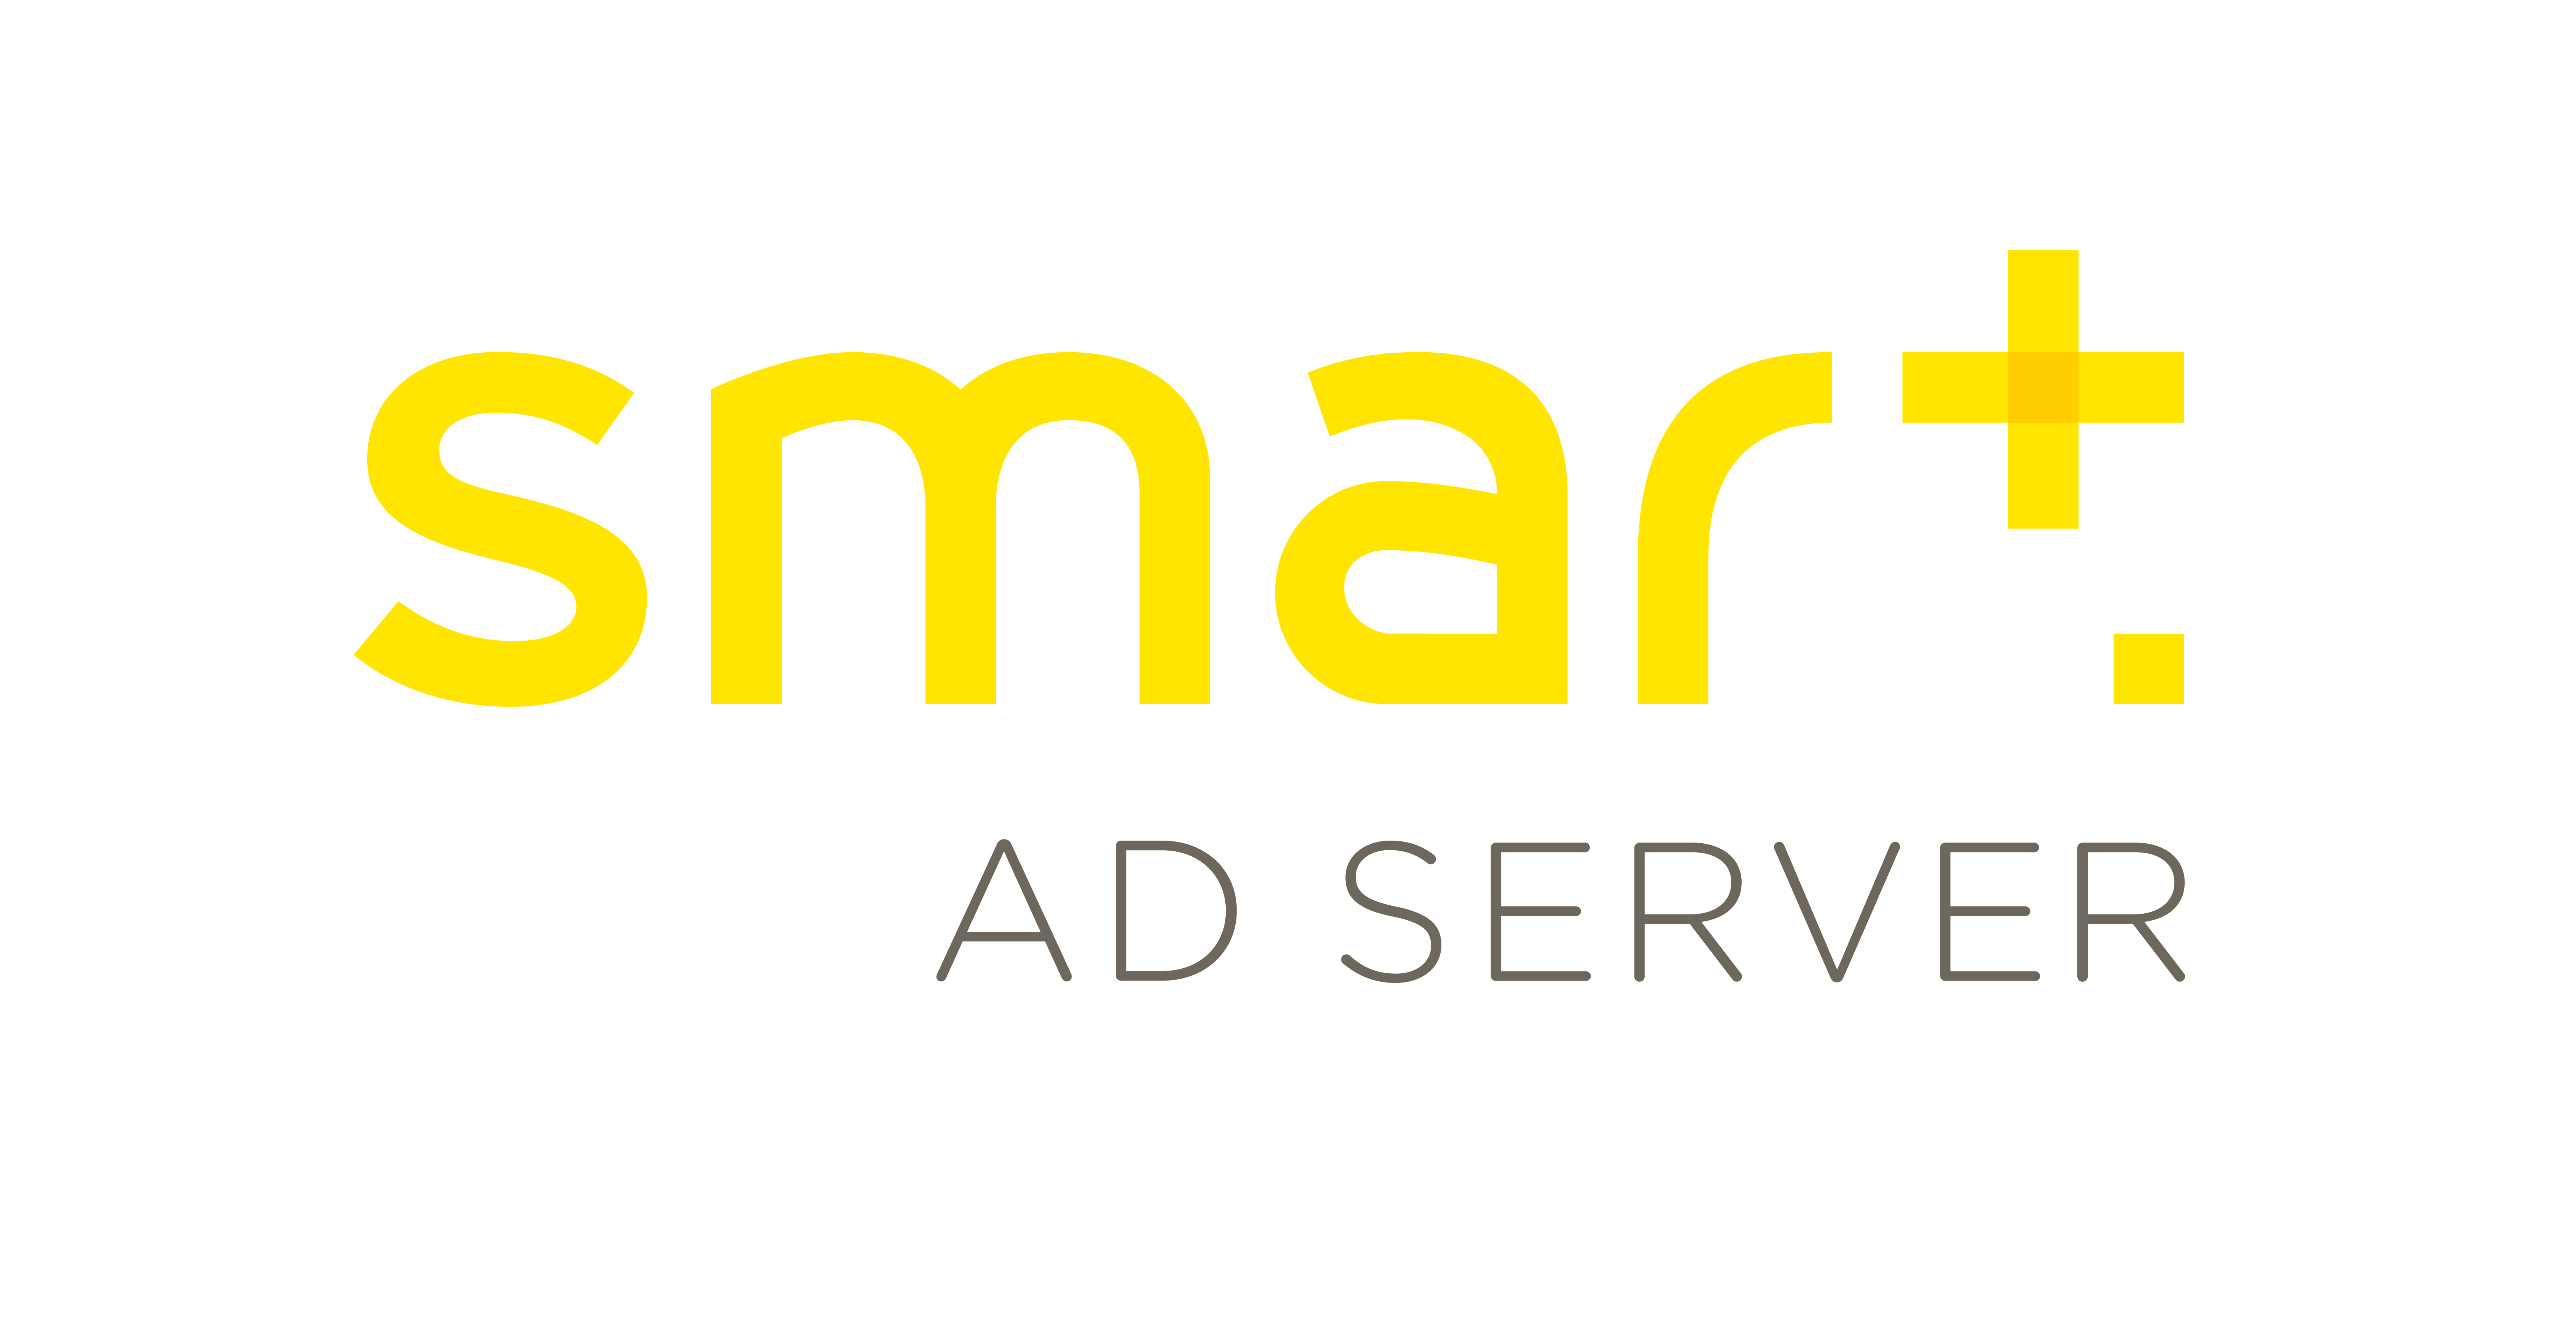 Smart AdServer